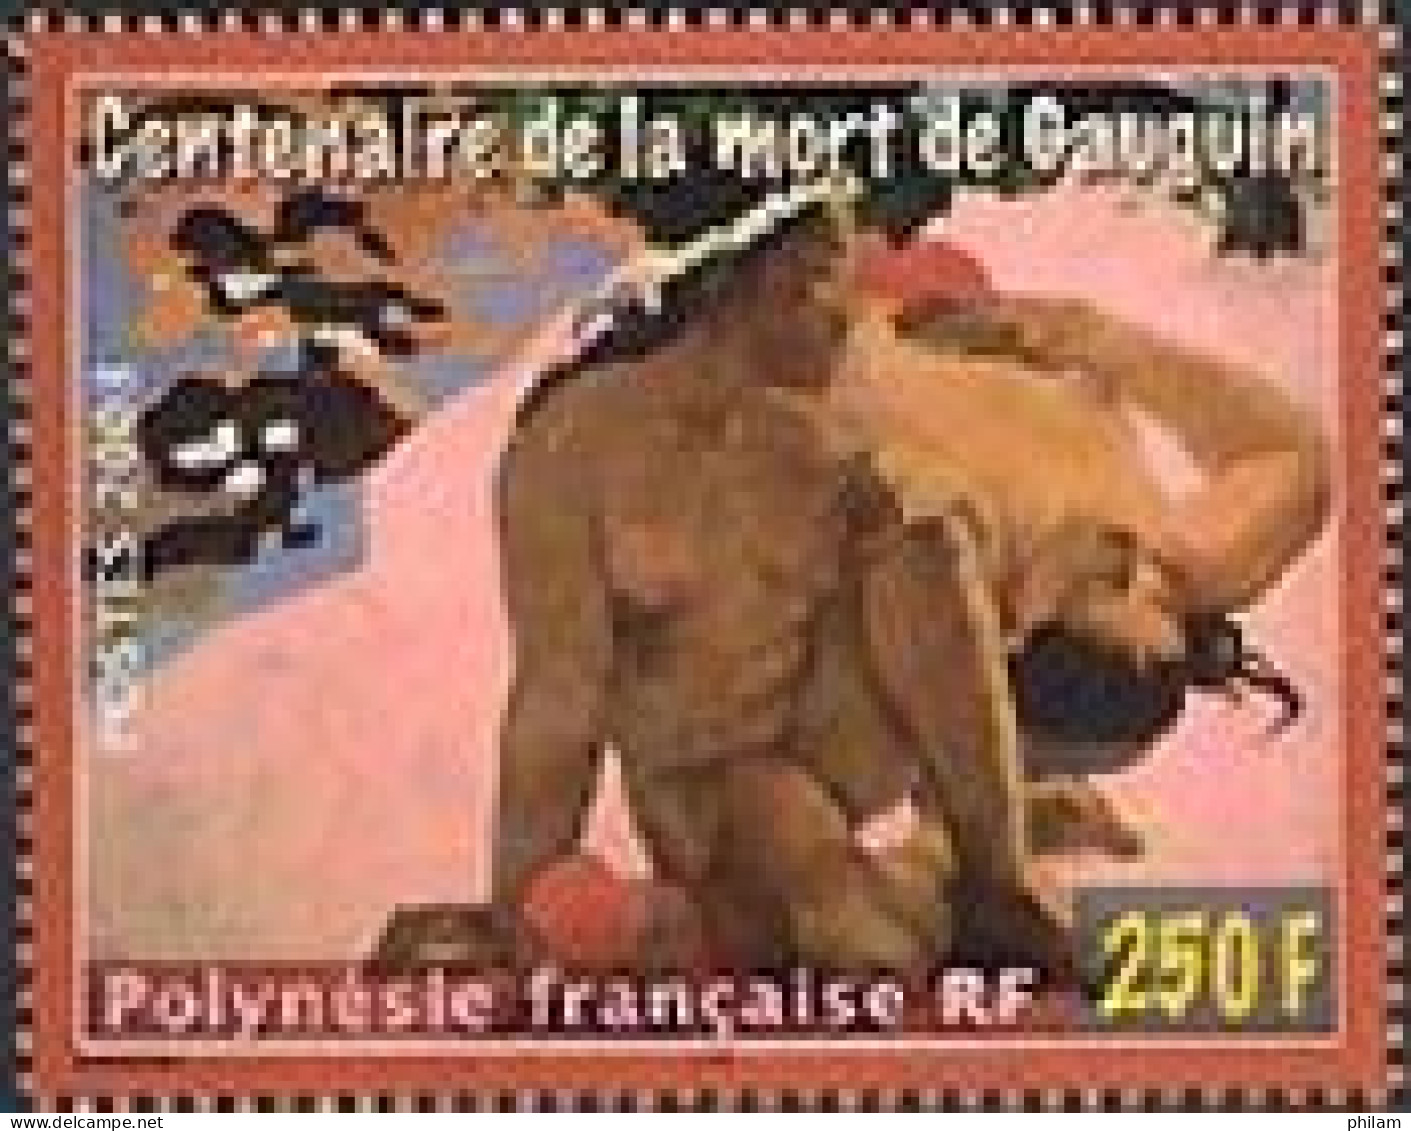 POLYNESIE 2003 - Centenaire De La Mort De Gauguin - 1 V. - Unused Stamps